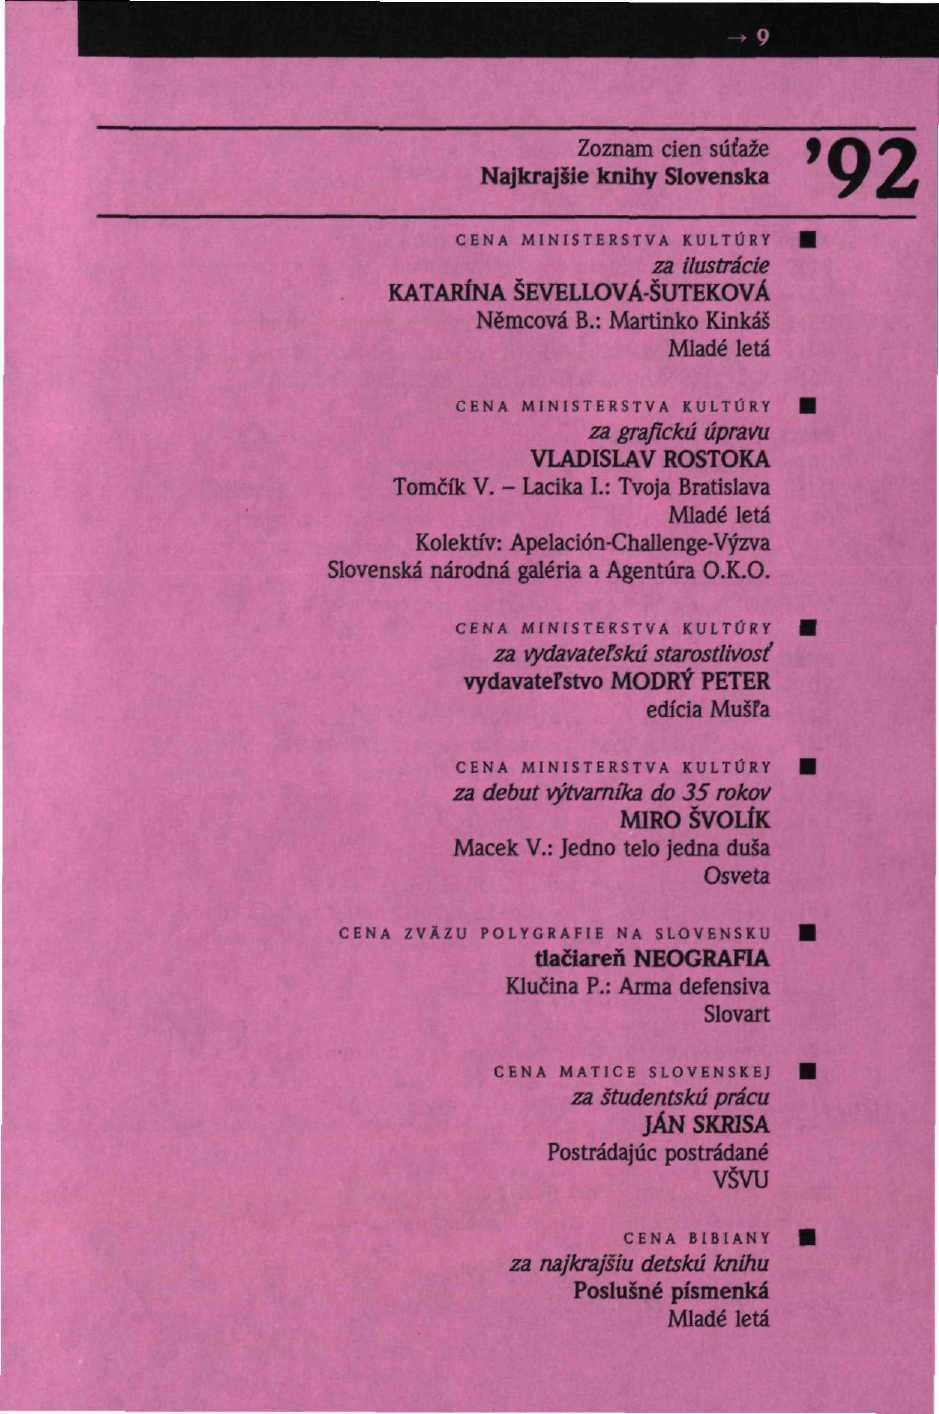 Zoznam cien súťaže '92 Najkrajšie knihy Slovenska CENA MINISTERSTVA KULTÚRY za ilustrácie KATARÍNA ŠEVELLOVÁ-ŠUTEKOVÁ Nemcova B.